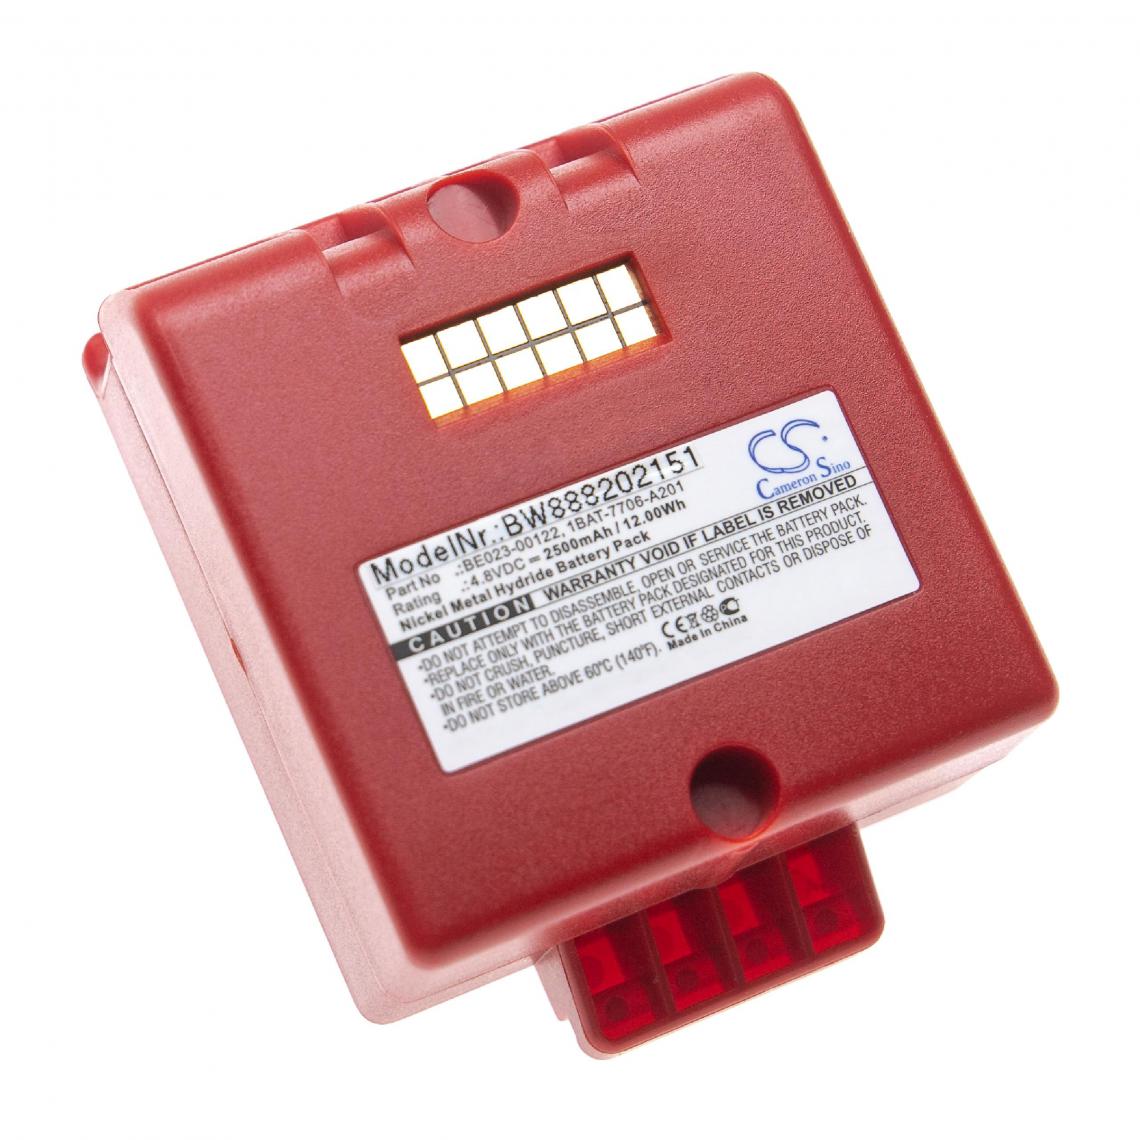 Vhbw - vhbw Batterie remplacement pour Cattron Theimig 1BAT-7706-A201, BE023-00122 pour télécommande industrielle (2500mAh, 4,8V, NiMH) - rouge - Autre appareil de mesure